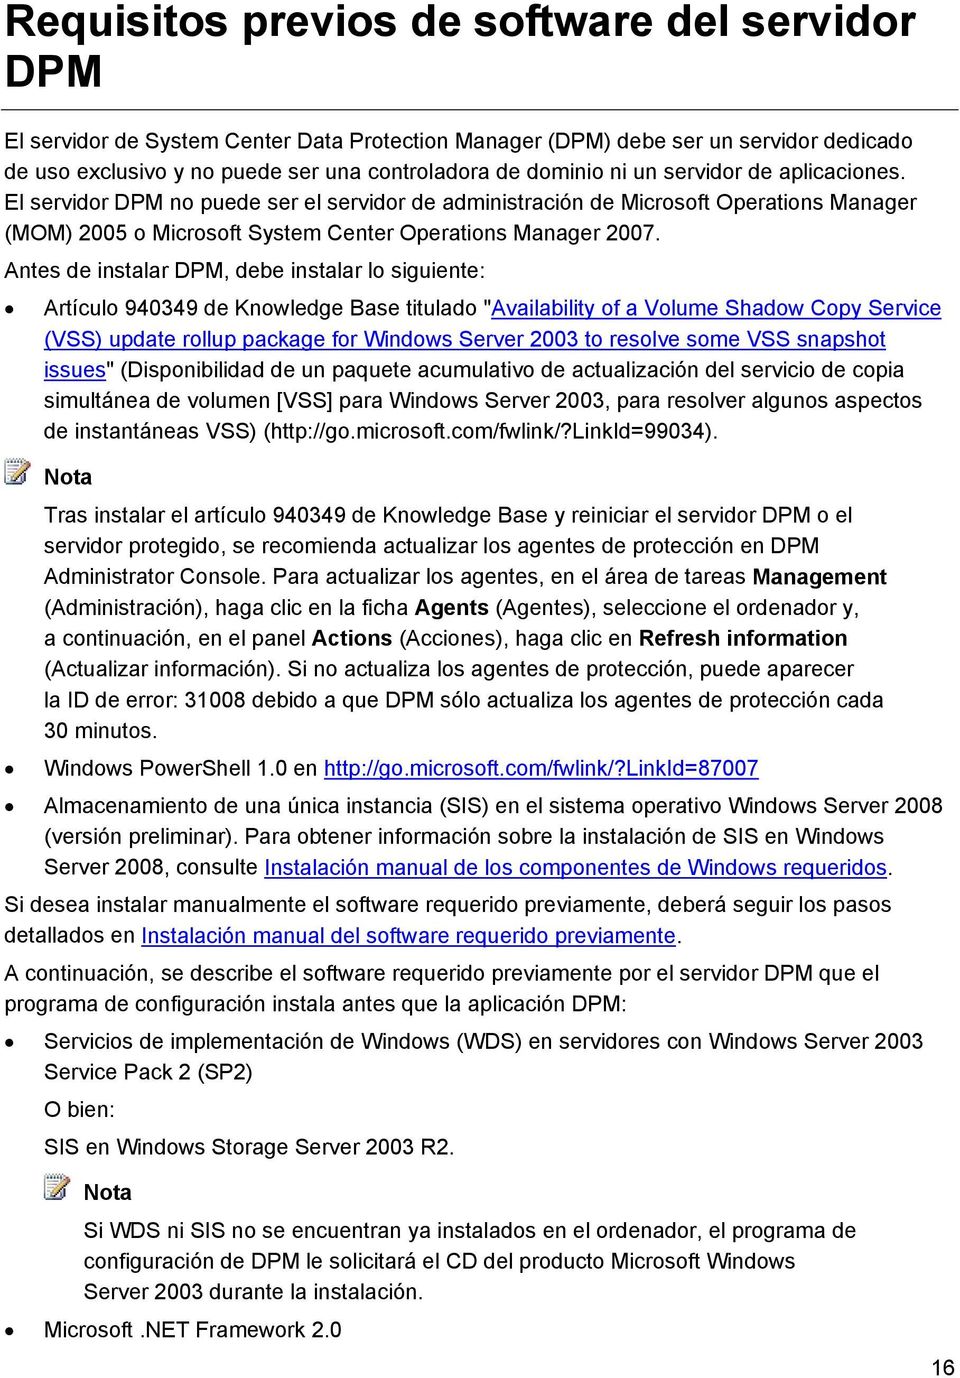 Antes de instalar DPM, debe instalar lo siguiente: Artículo 940349 de Knowledge Base titulado "Availability of a Volume Shadow Copy Service (VSS) update rollup package for Windows Server 2003 to